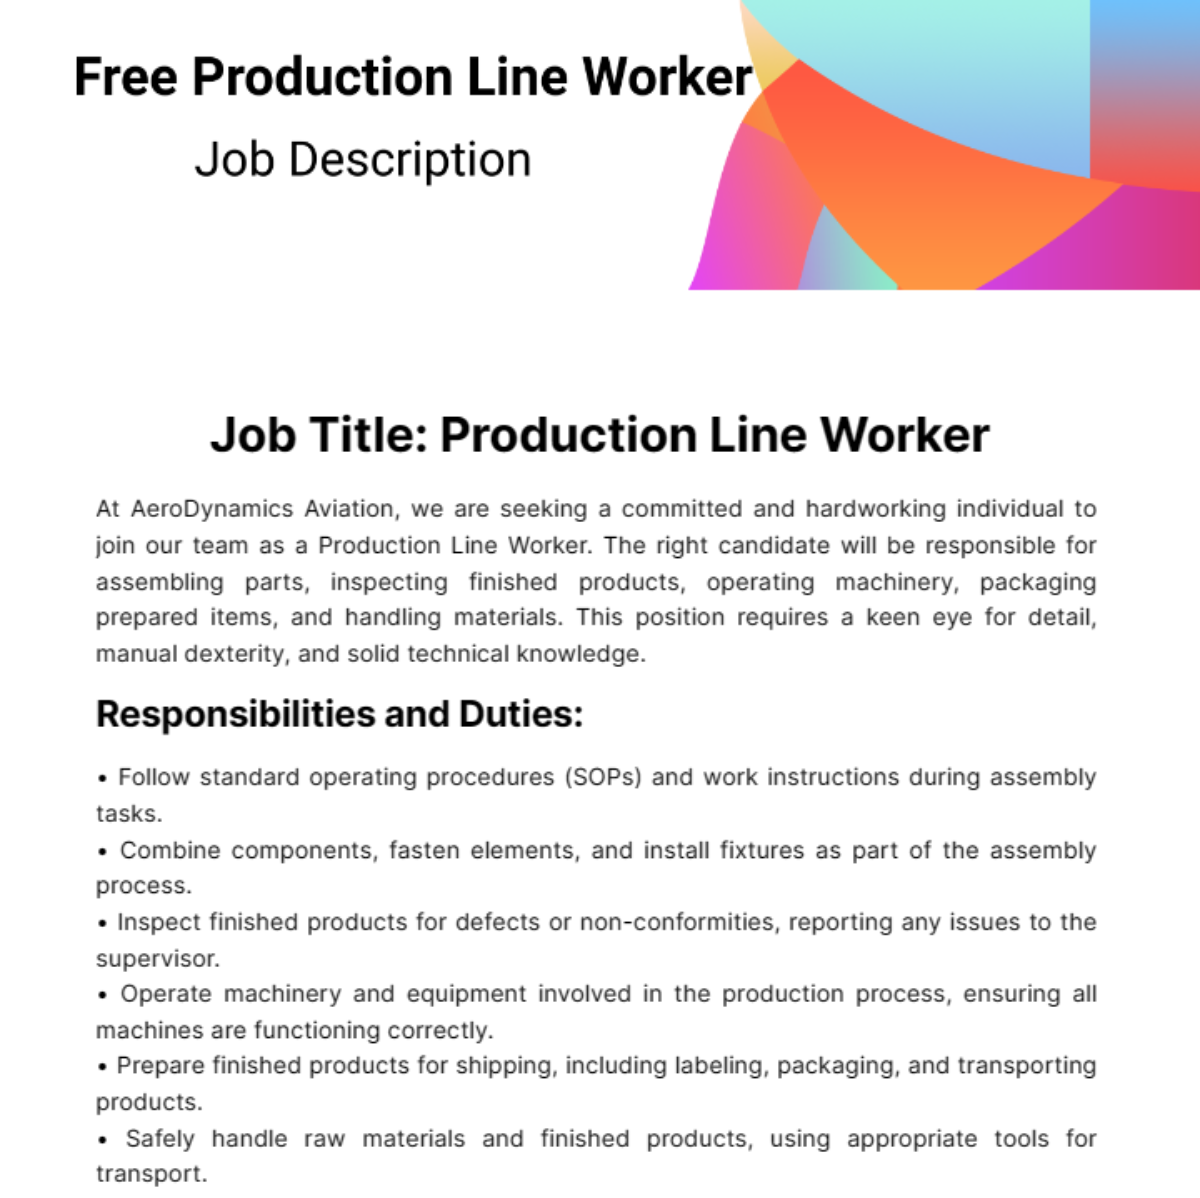 Free Production Line Worker Job Description Template